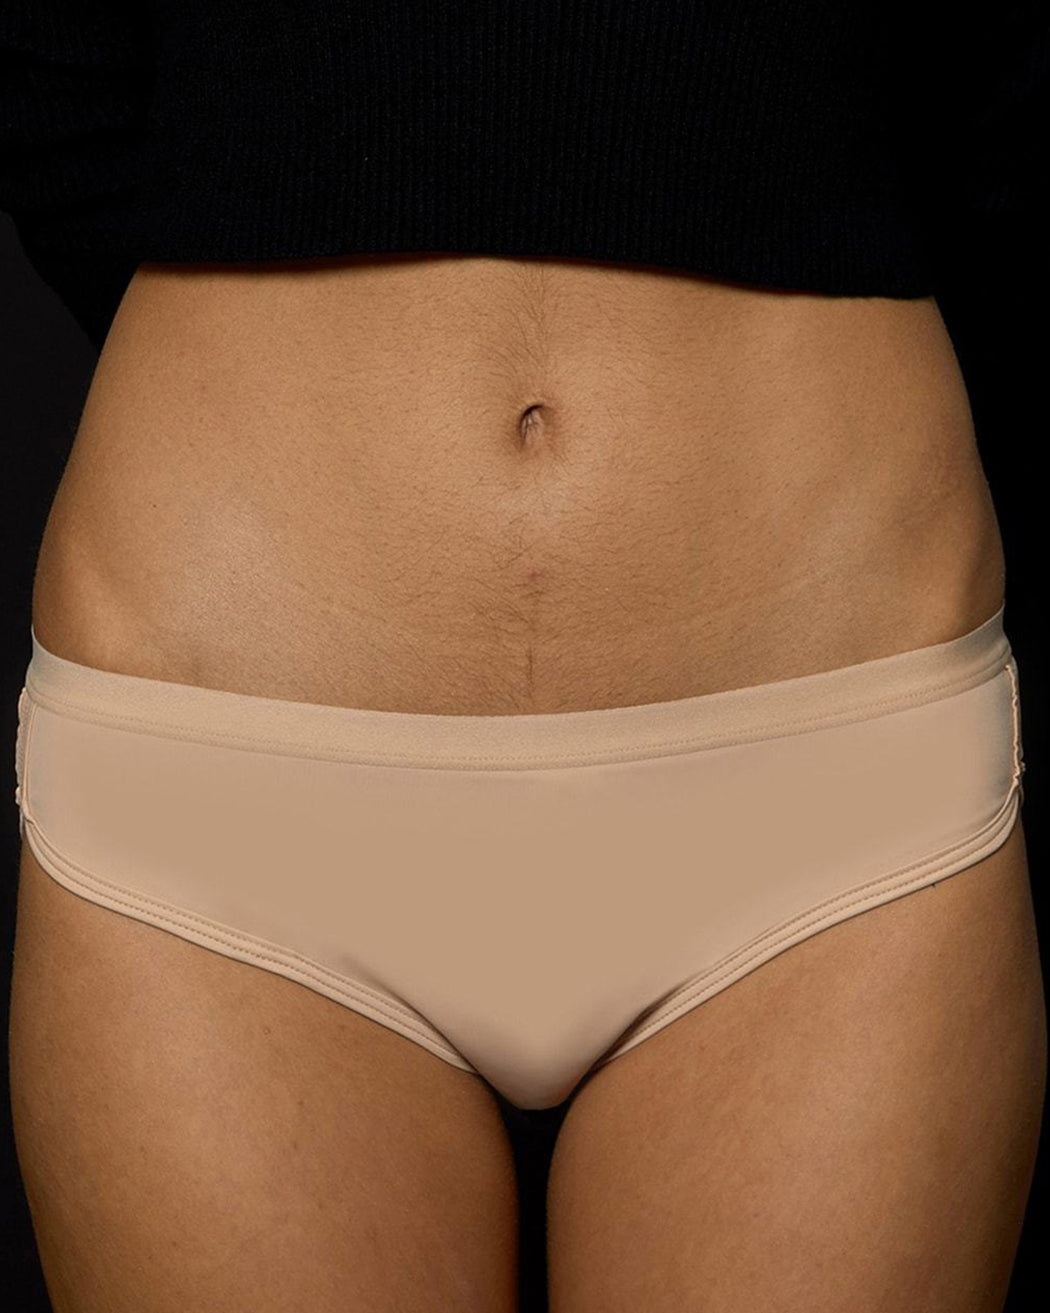 Sport – Period-Proof Underwear